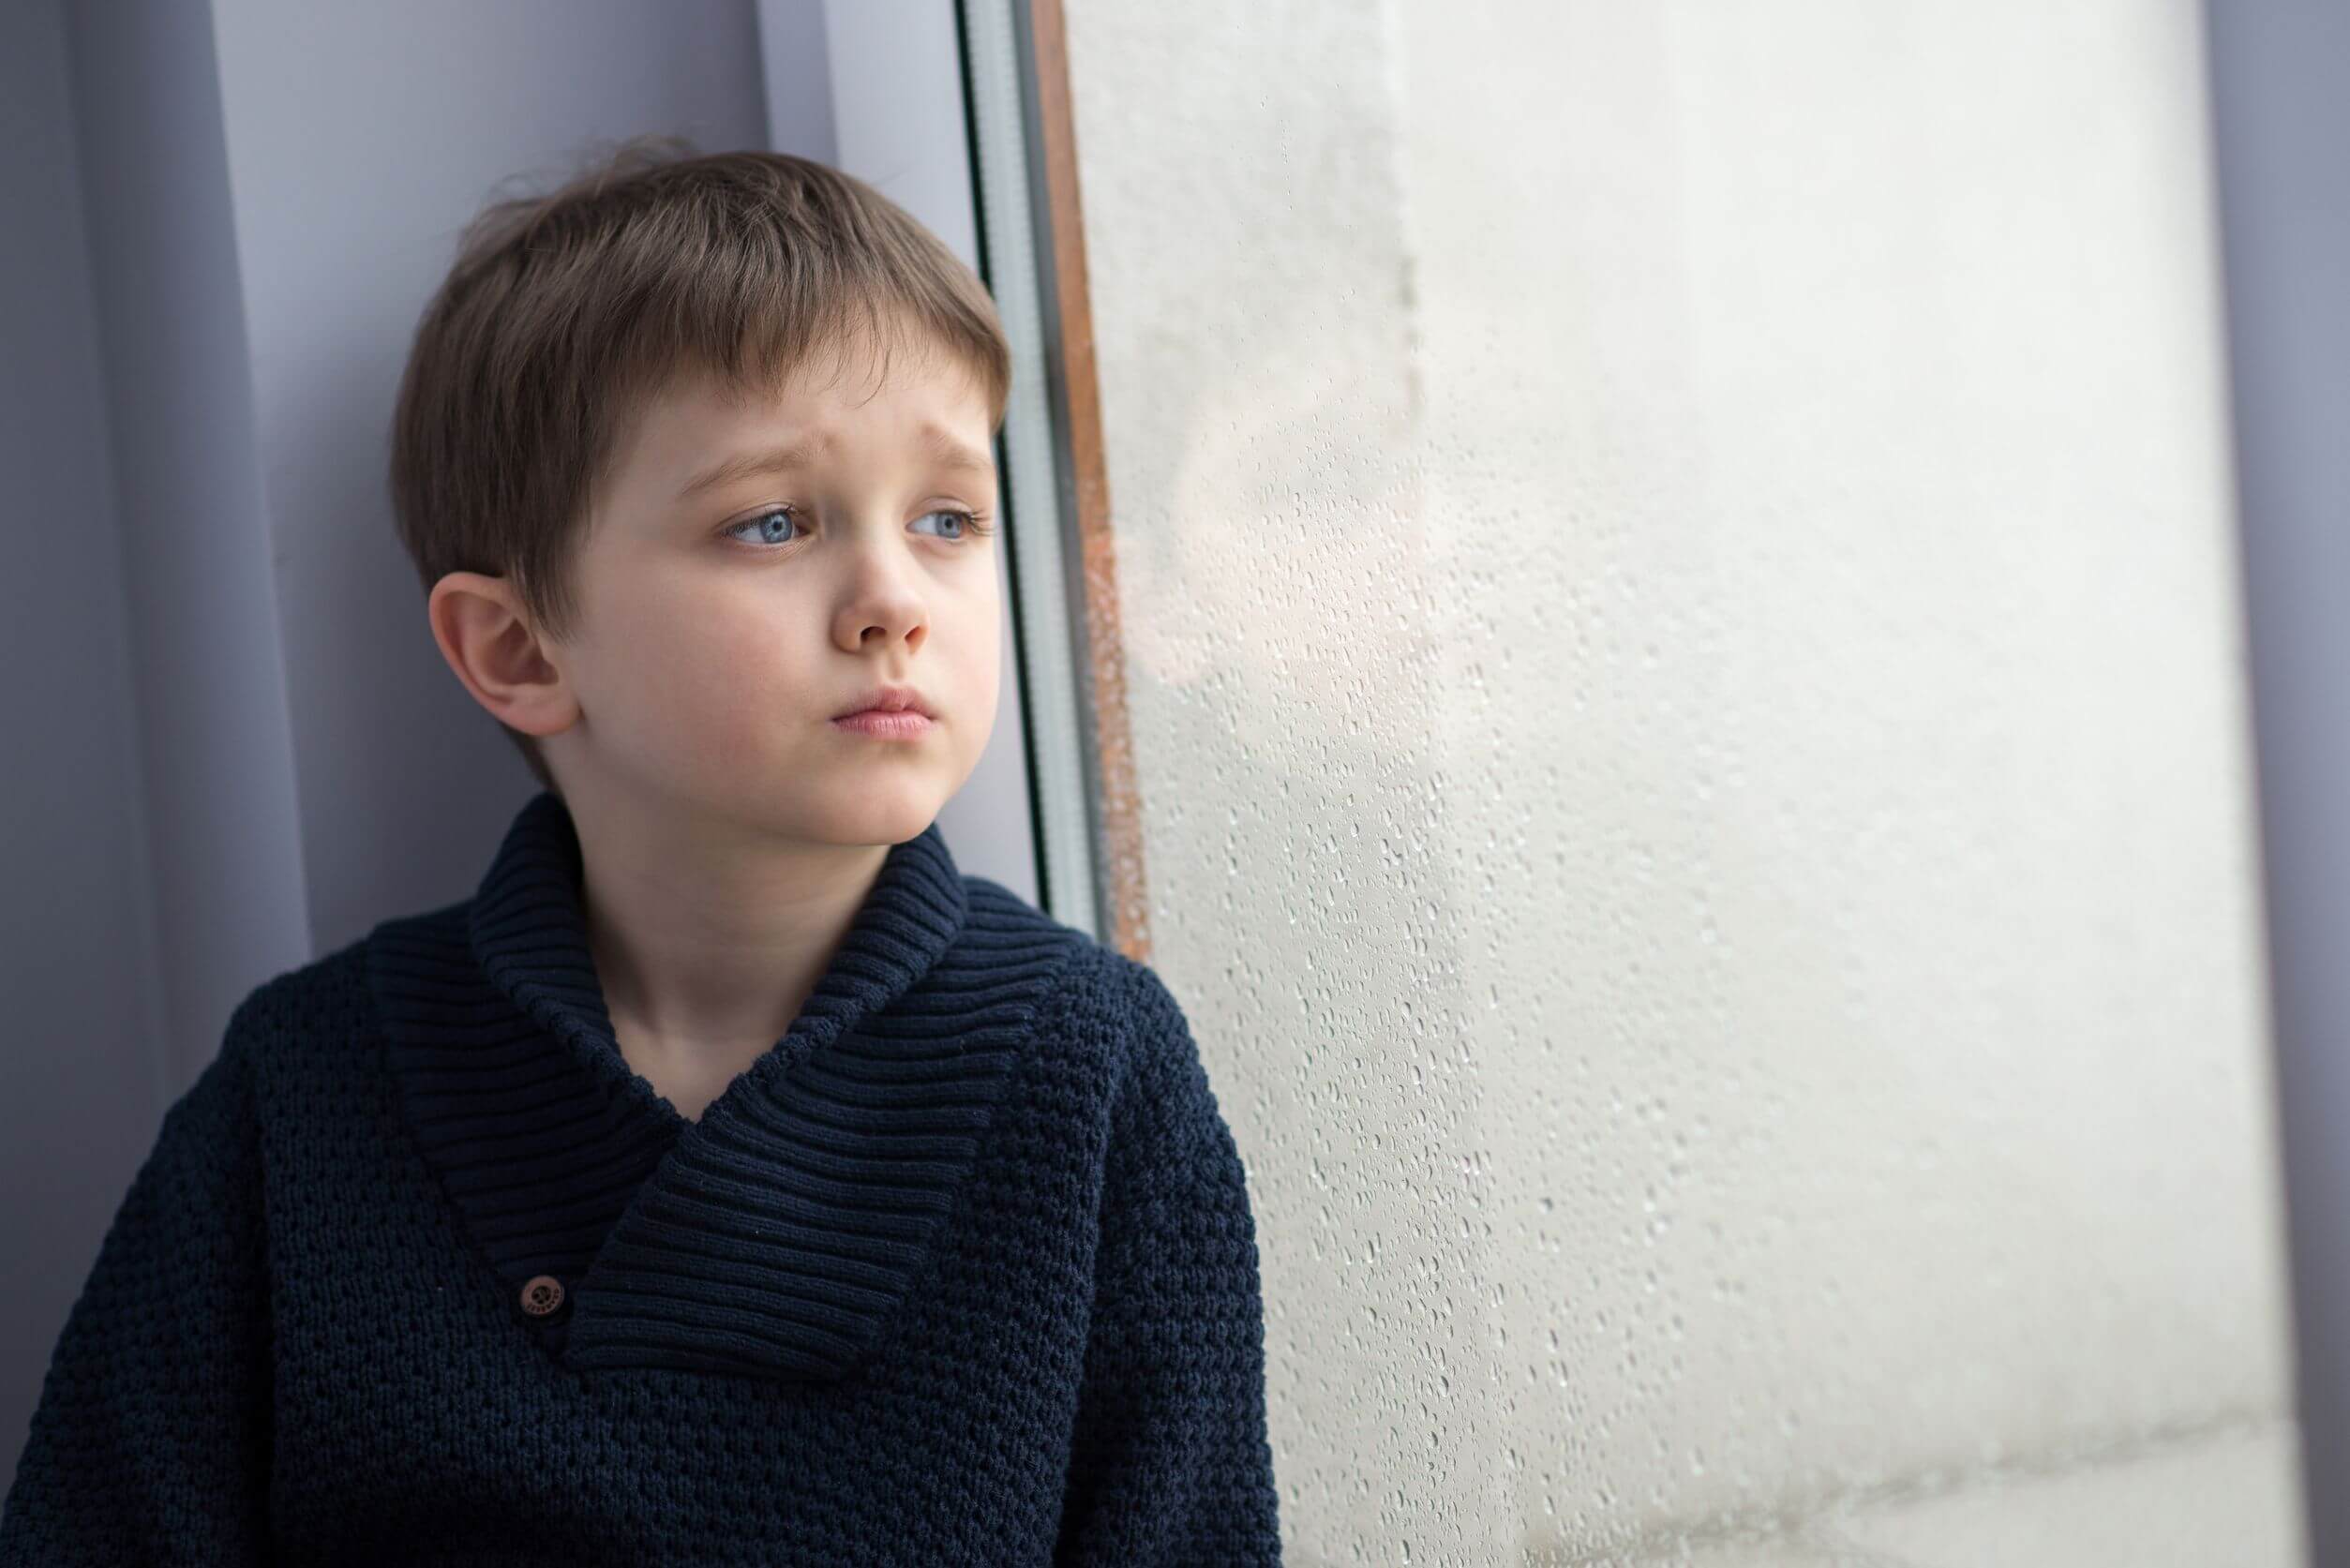 Niños que se sienten solos: ¿cómo actuar?